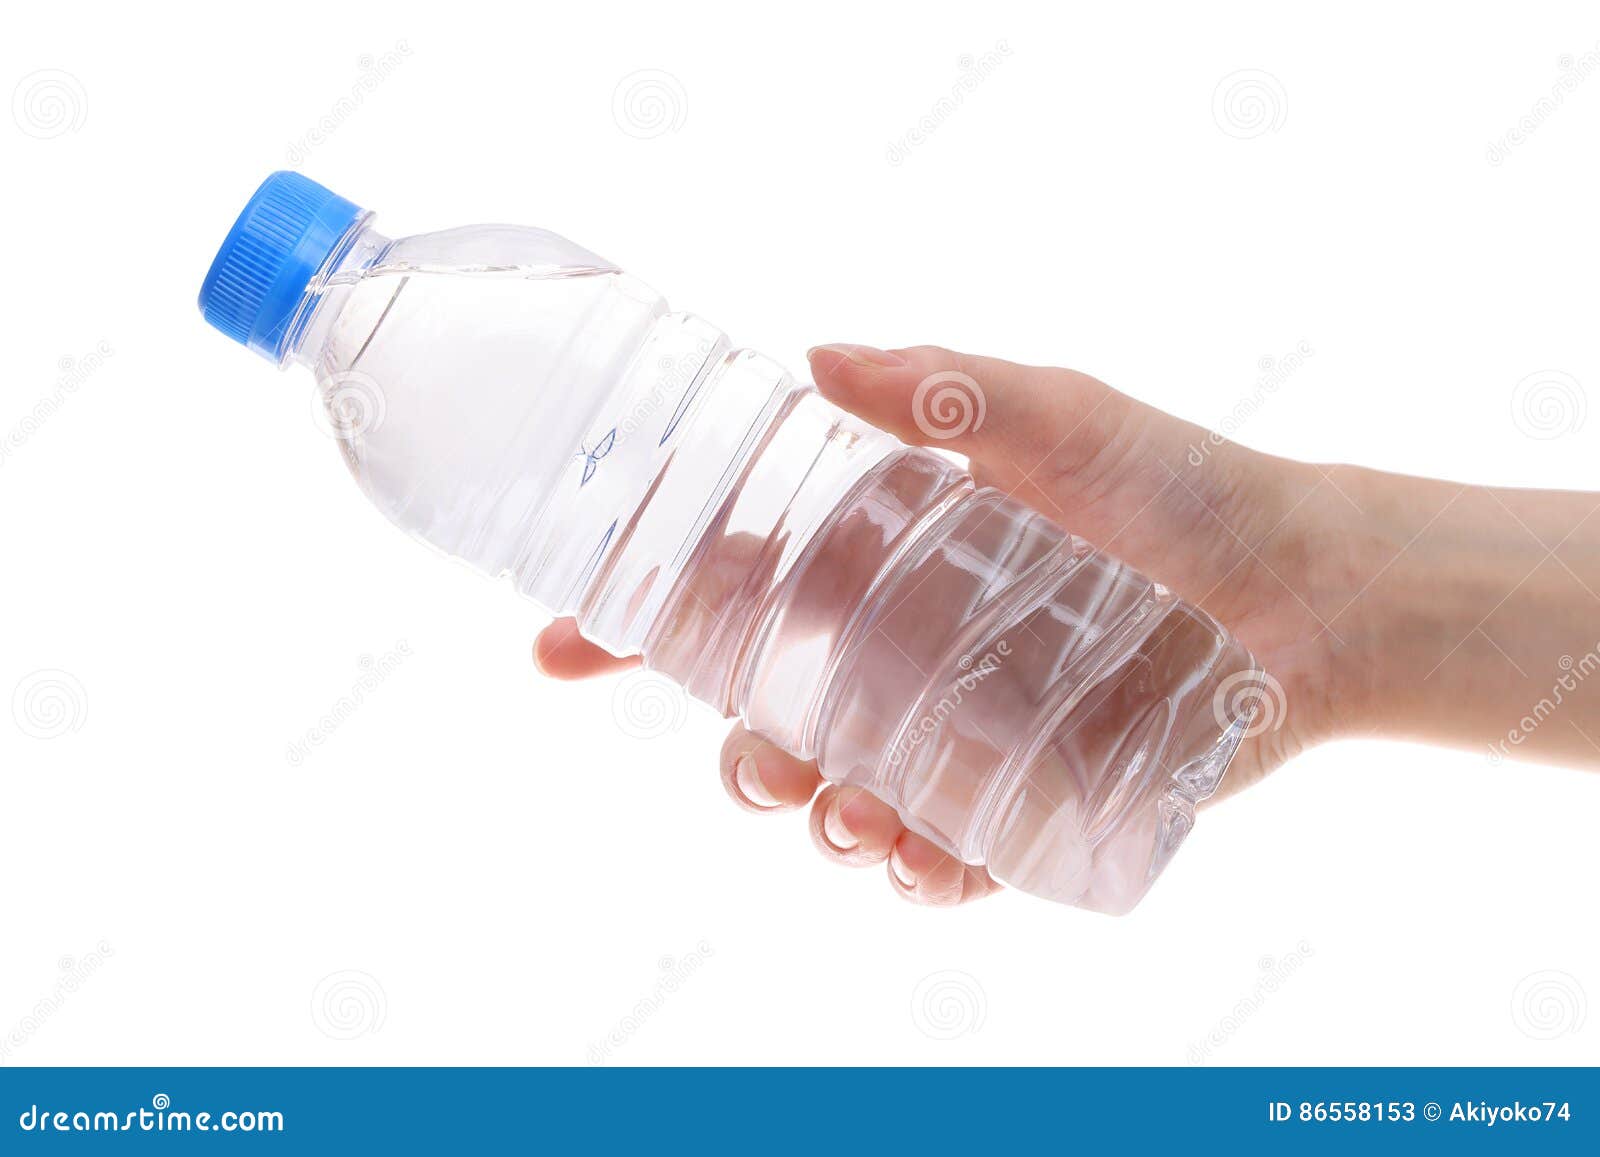 Возьми пустую пластиковую бутылку с завинчивающейся. ПЭТ-бутылки в руках. Бутылка воды в руке. Пластиковая бутылка в руке. Пустая пластиковая бутылка в руке.